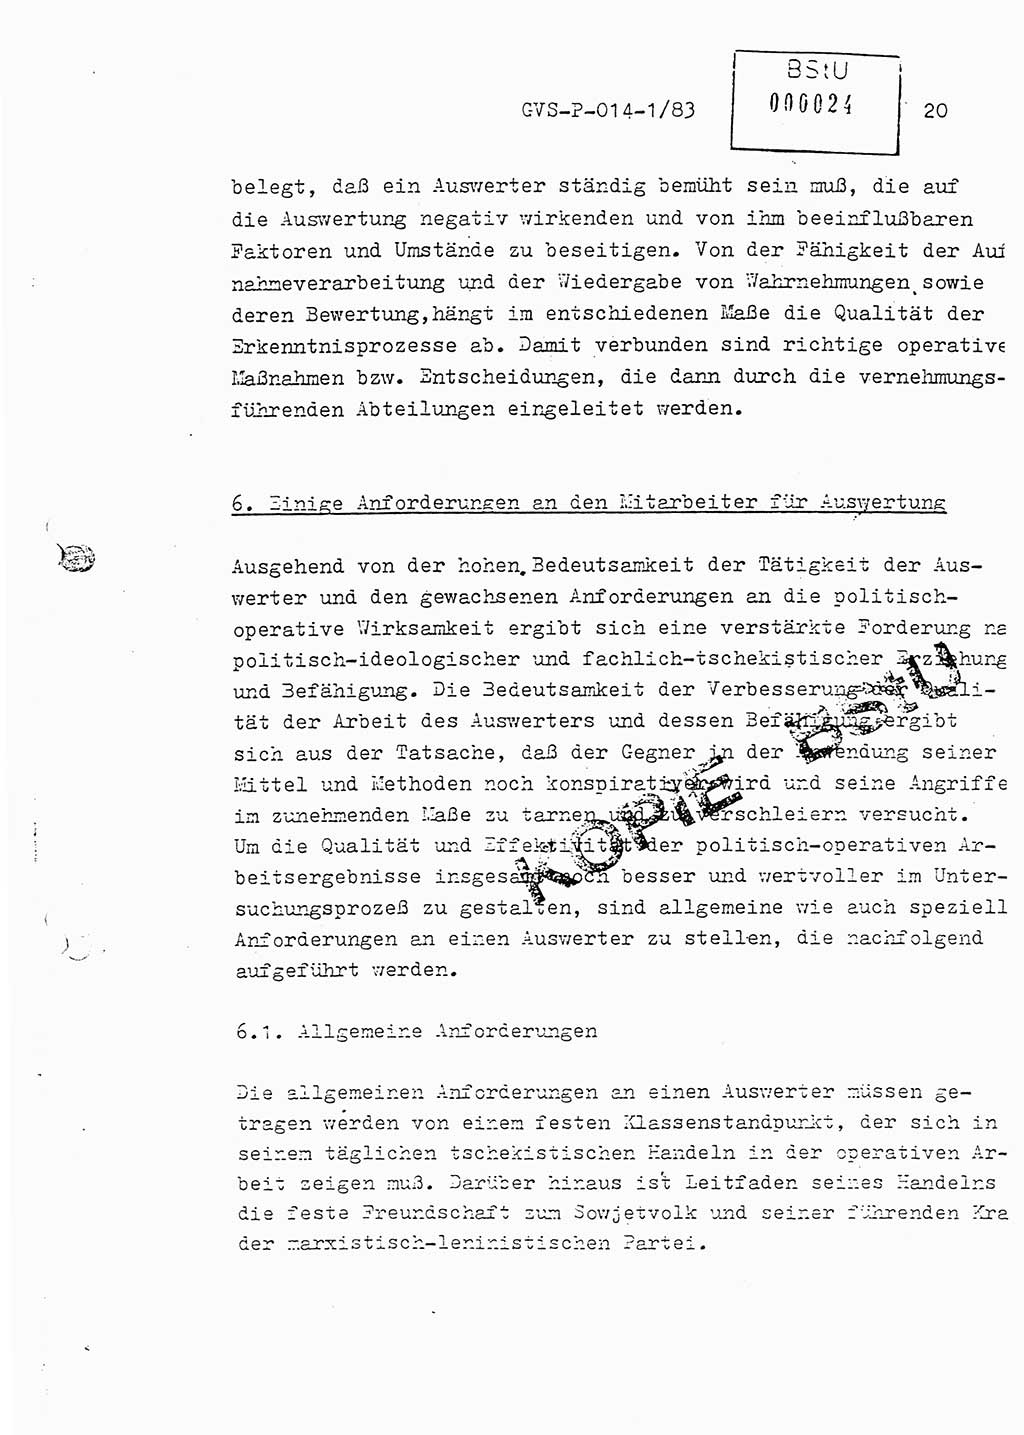 Fachschulabschlußarbeit Leutnant Dirk Autentrieb (HA Ⅸ/AKG), Ministerium für Staatssicherheit (MfS) [Deutsche Demokratische Republik (DDR)], Hauptabteilung (HA) Ⅸ, Geheime Verschlußsache (GVS) P-014-1/83, Berlin 1983, Blatt 20 (FS-Abschl.-Arb. MfS DDR HA Ⅸ GVS P-014-1/83 1983, Bl. 20)